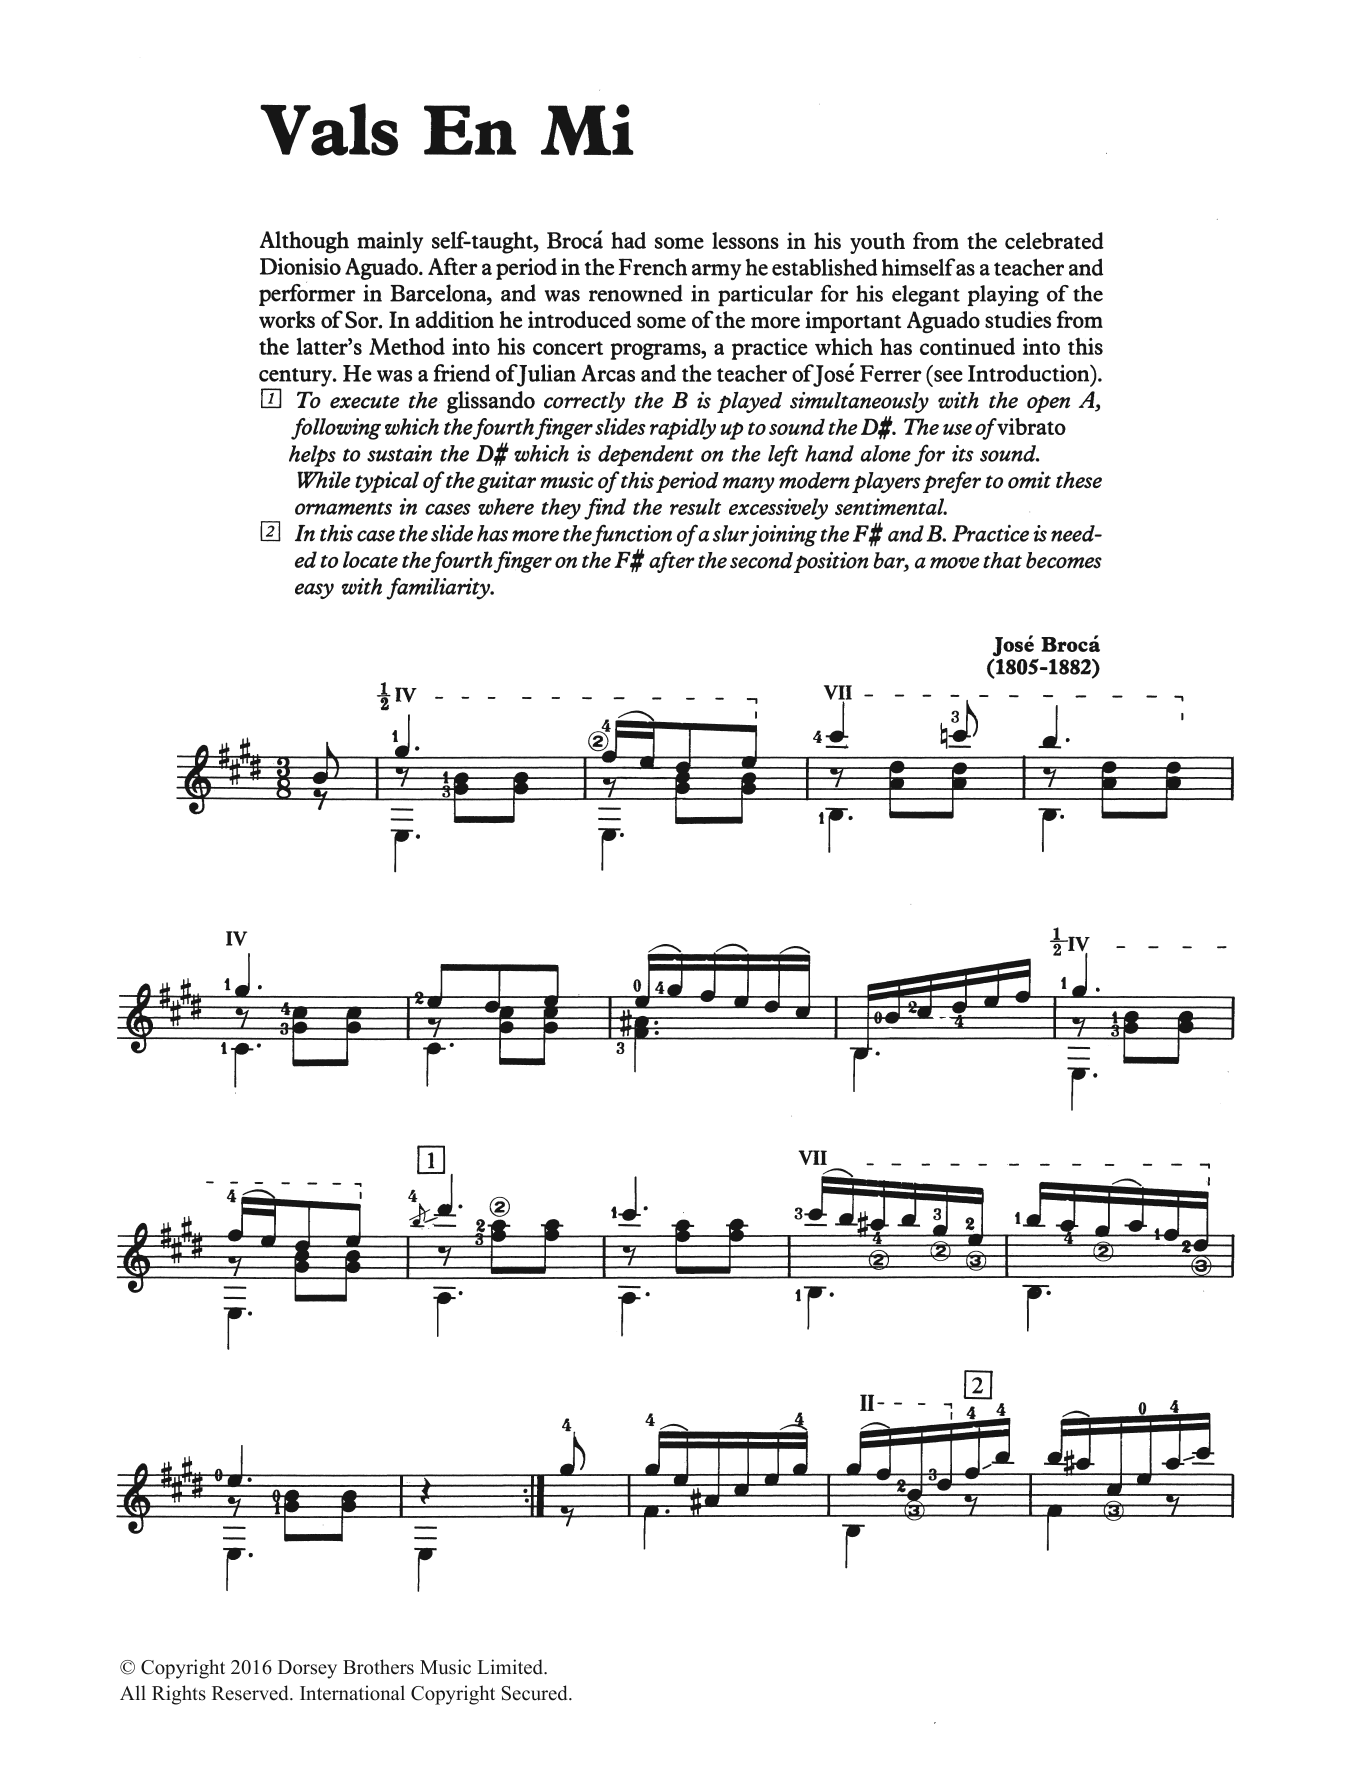 José Brocá Vals En Mi Sheet Music Notes & Chords for Guitar - Download or Print PDF